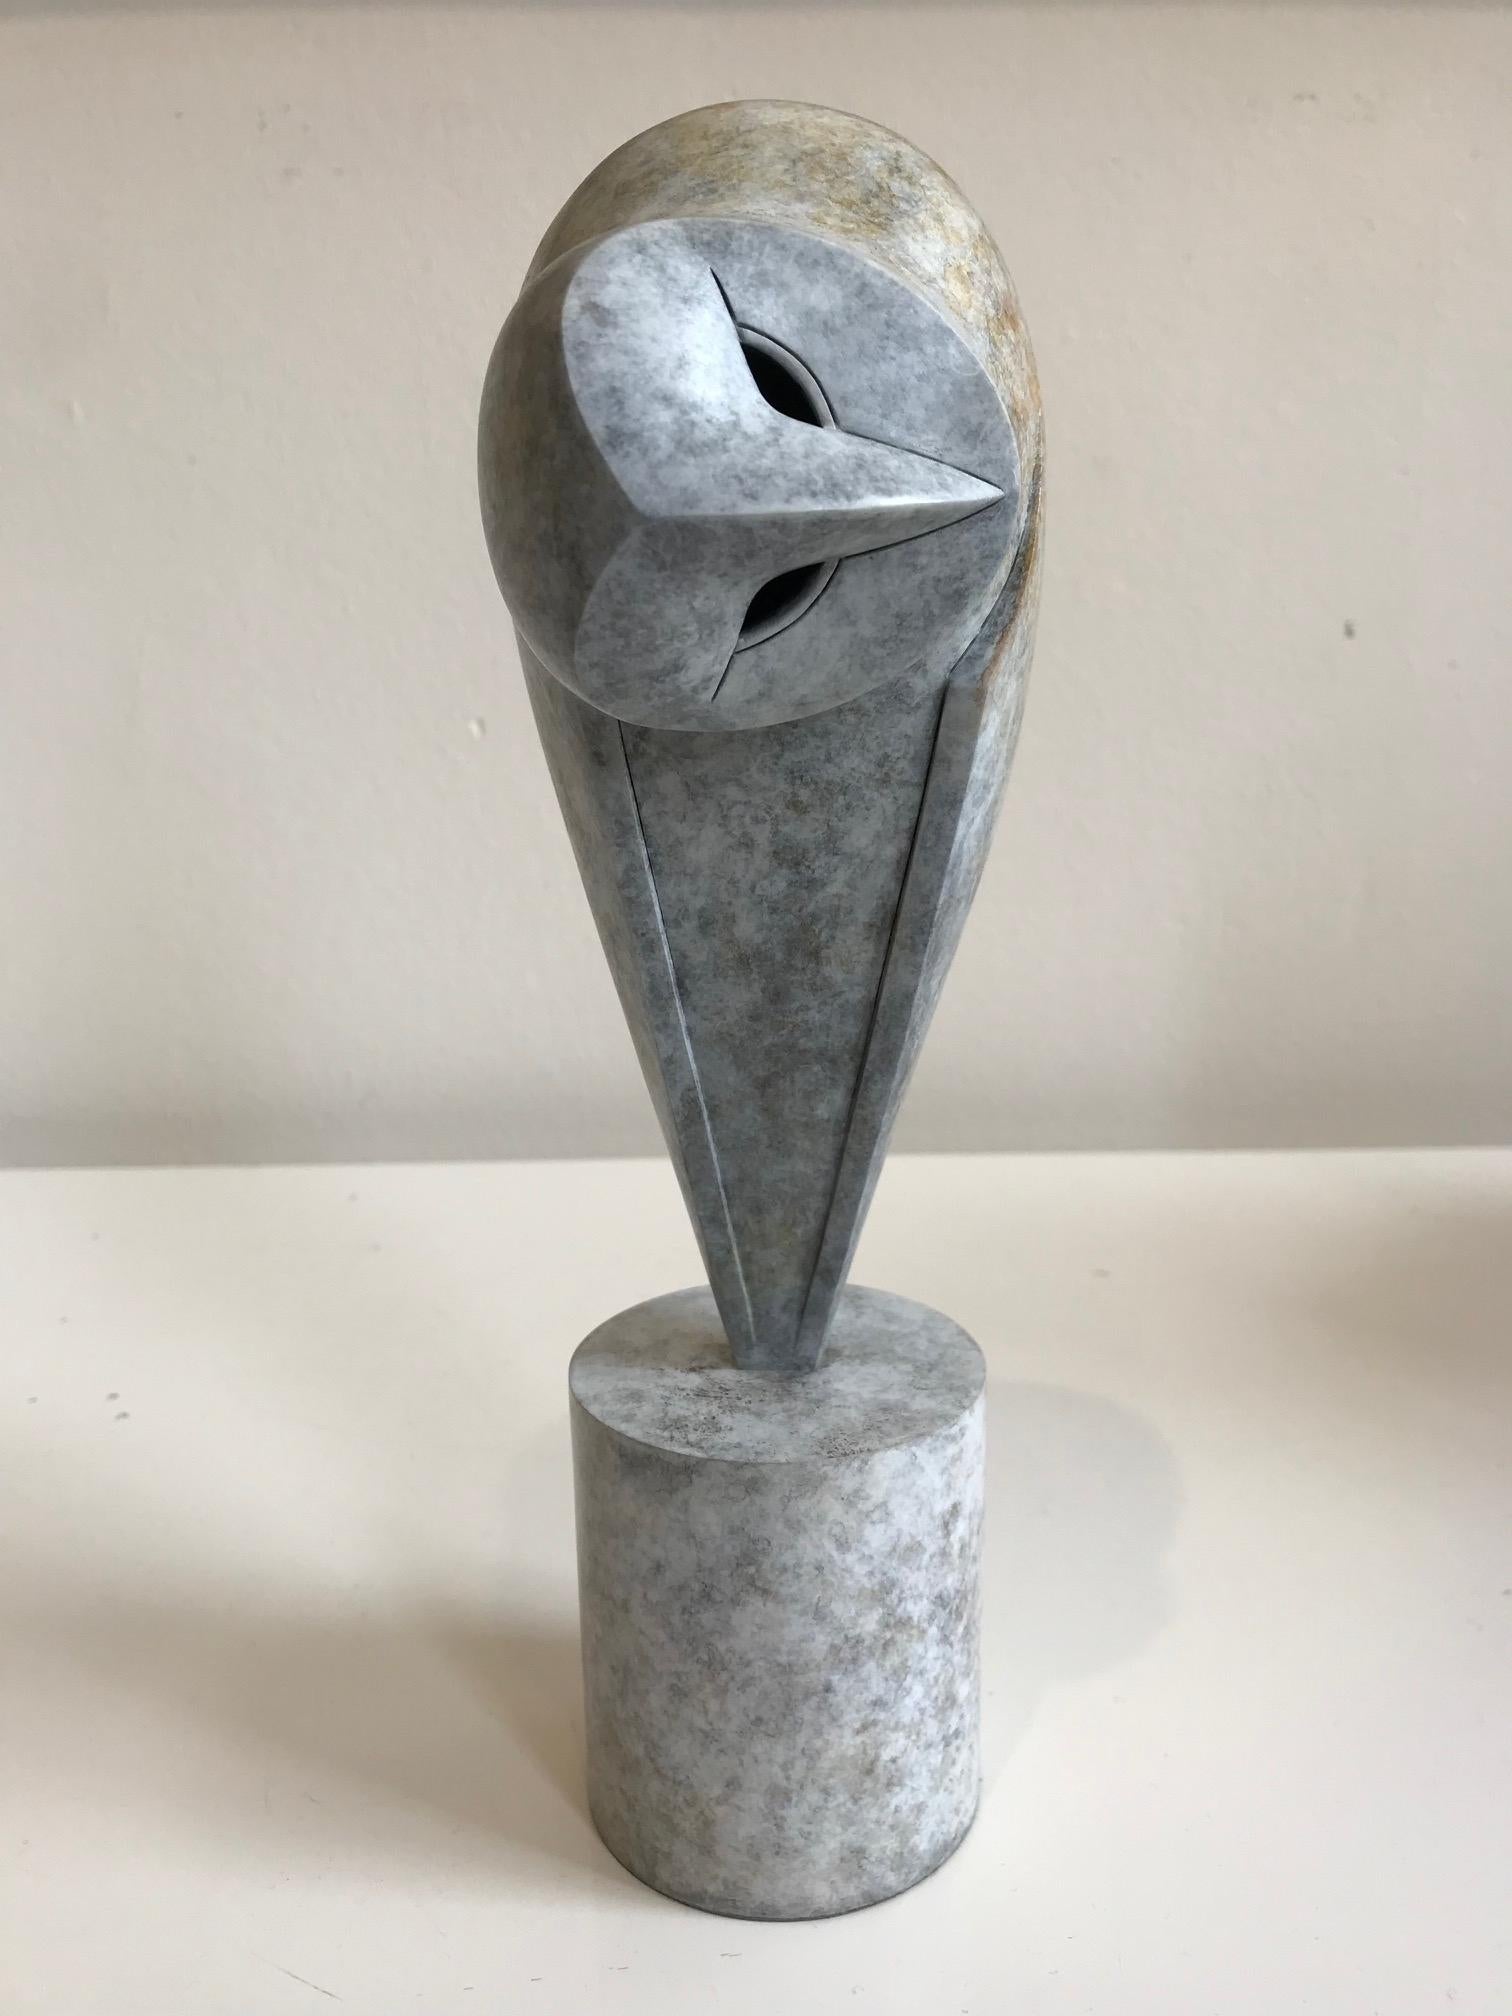 Figurative Sculpture Anthony Theakston - "20-20" Sculpture contemporaine en bronze Portrait d'un hibou à la tête penchée, oiseau